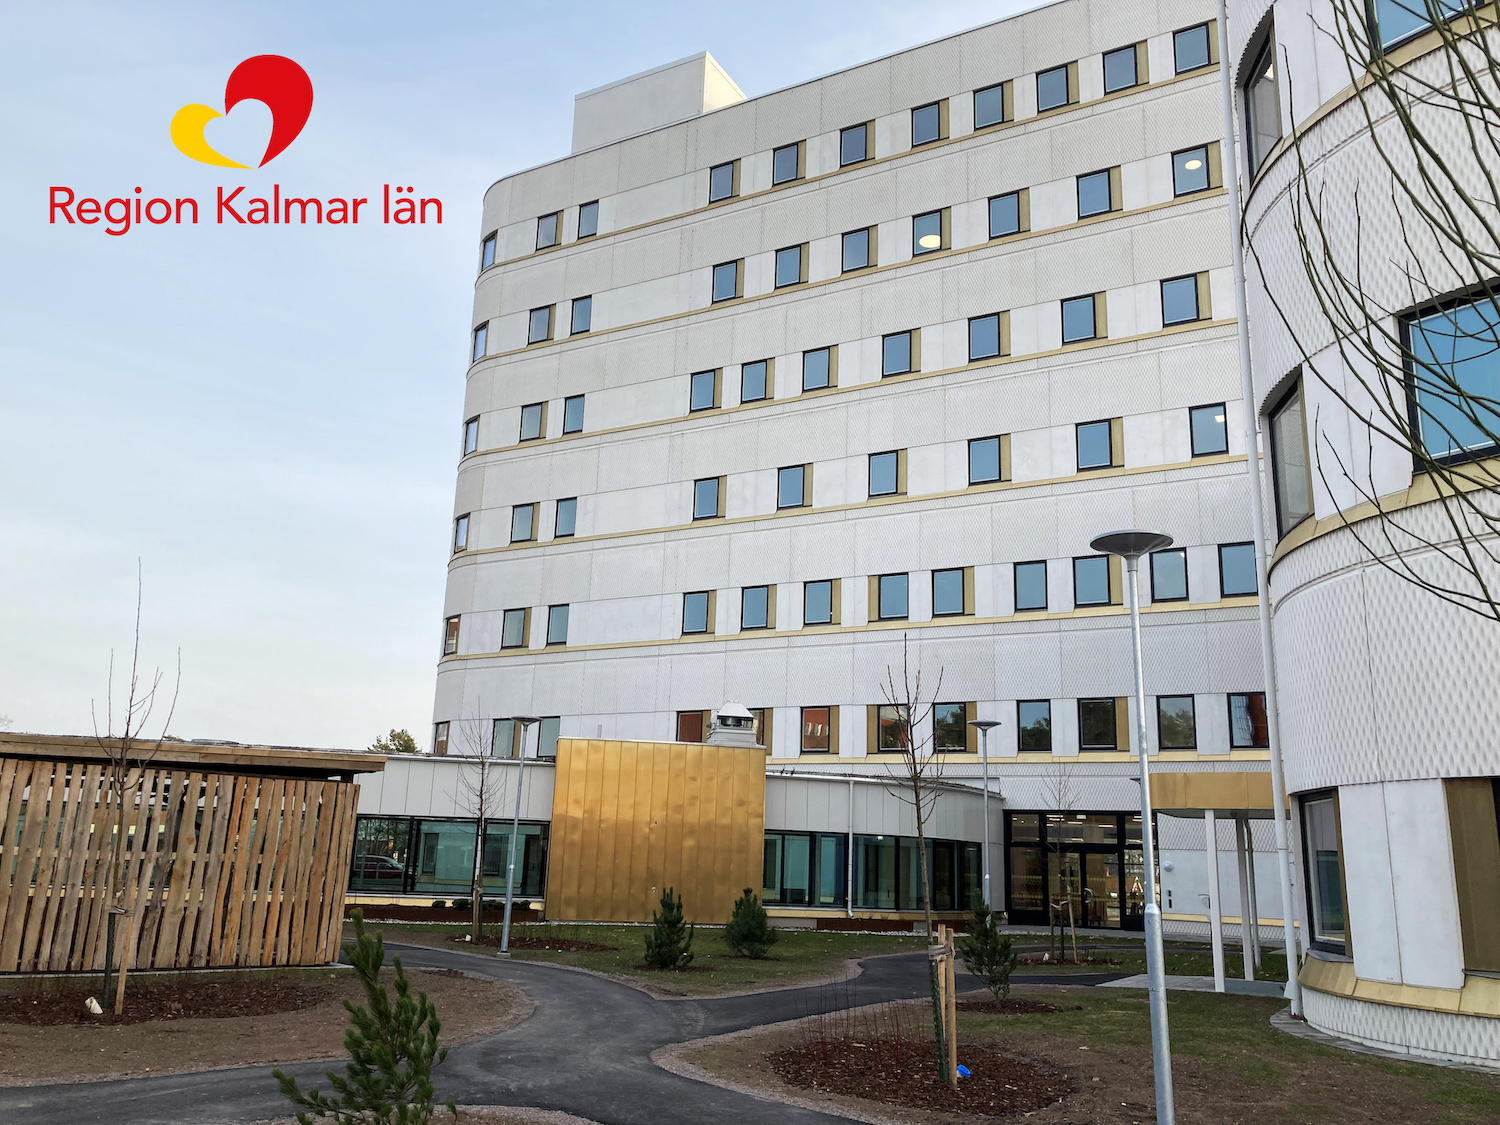 Region Kalmar läns tidsbesparingar i projektet med hjälp av Bimeye